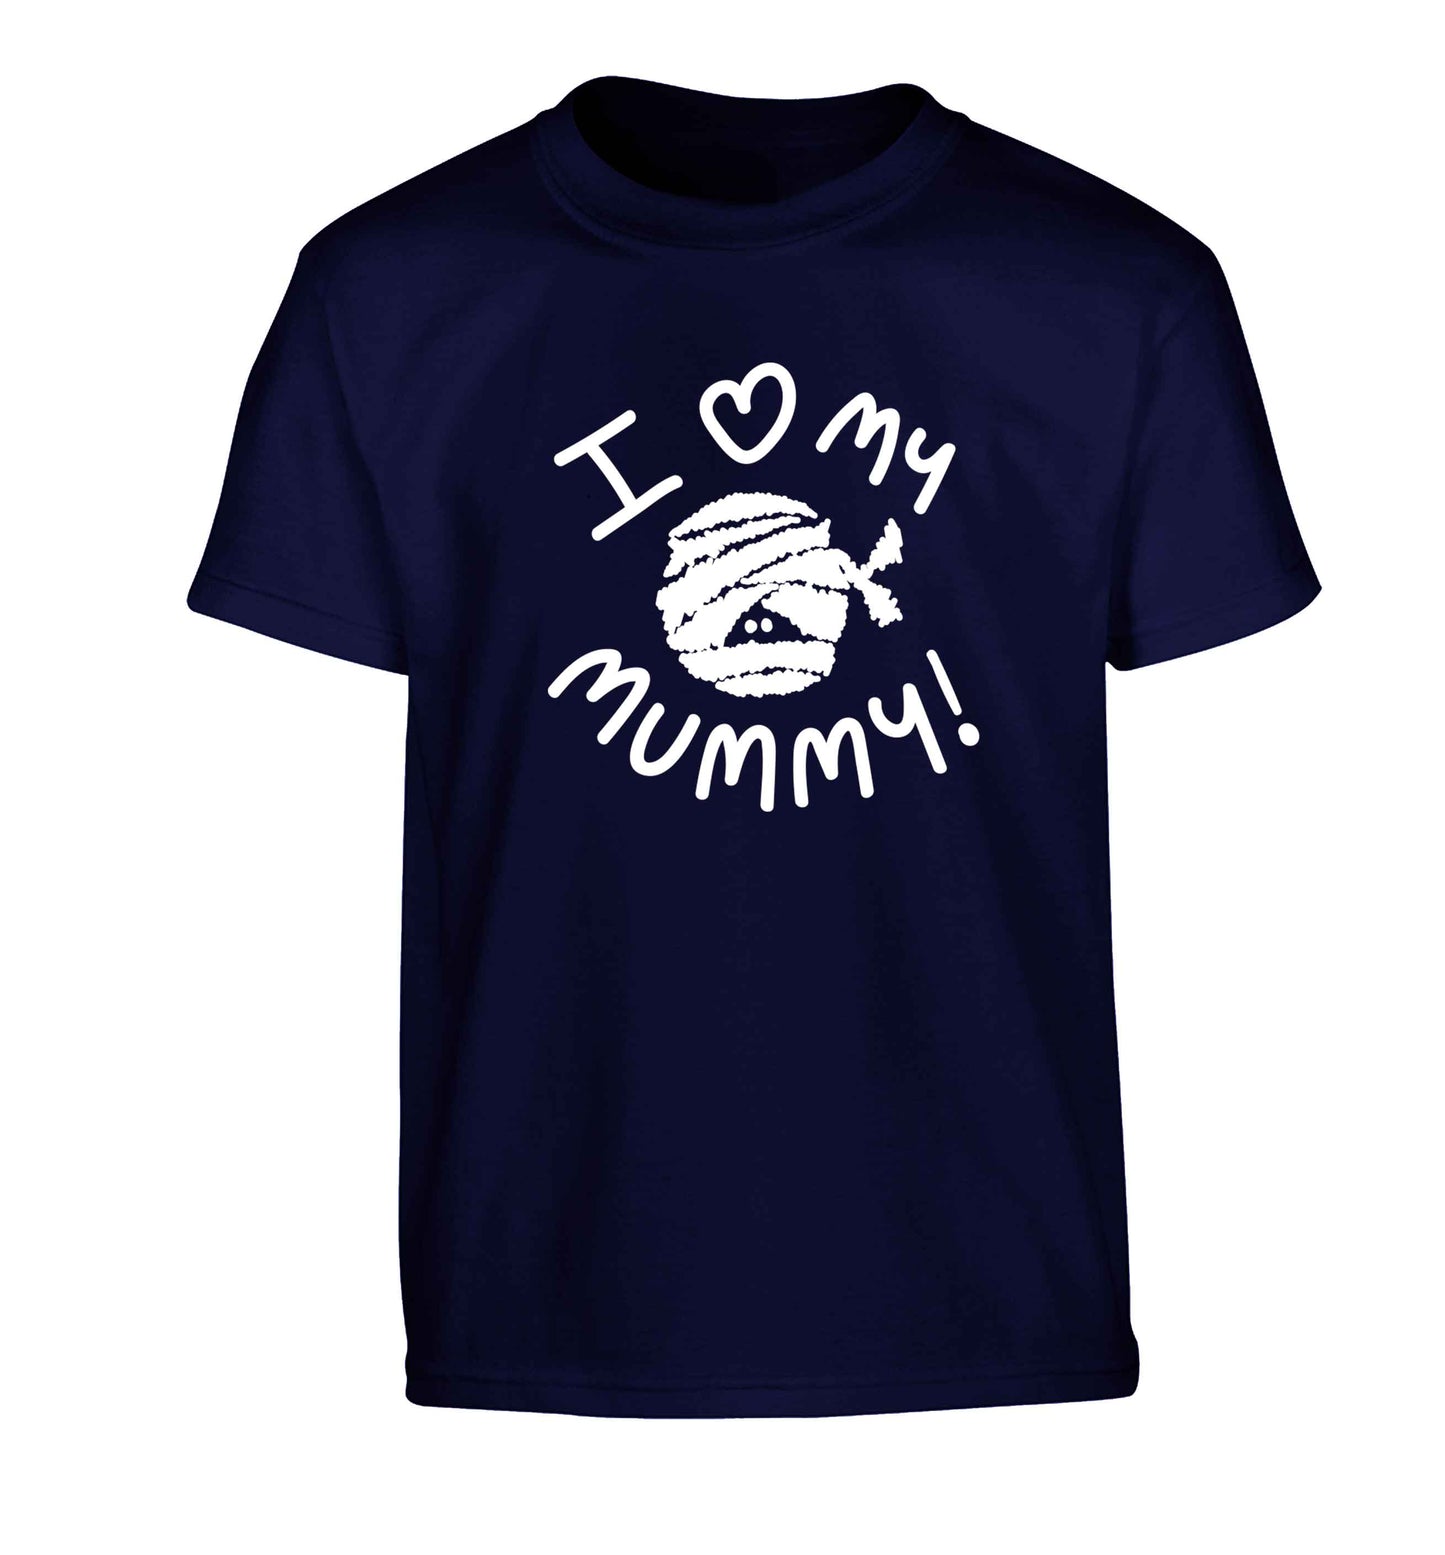 I love my mummy halloween pun Children's navy Tshirt 12-13 Years